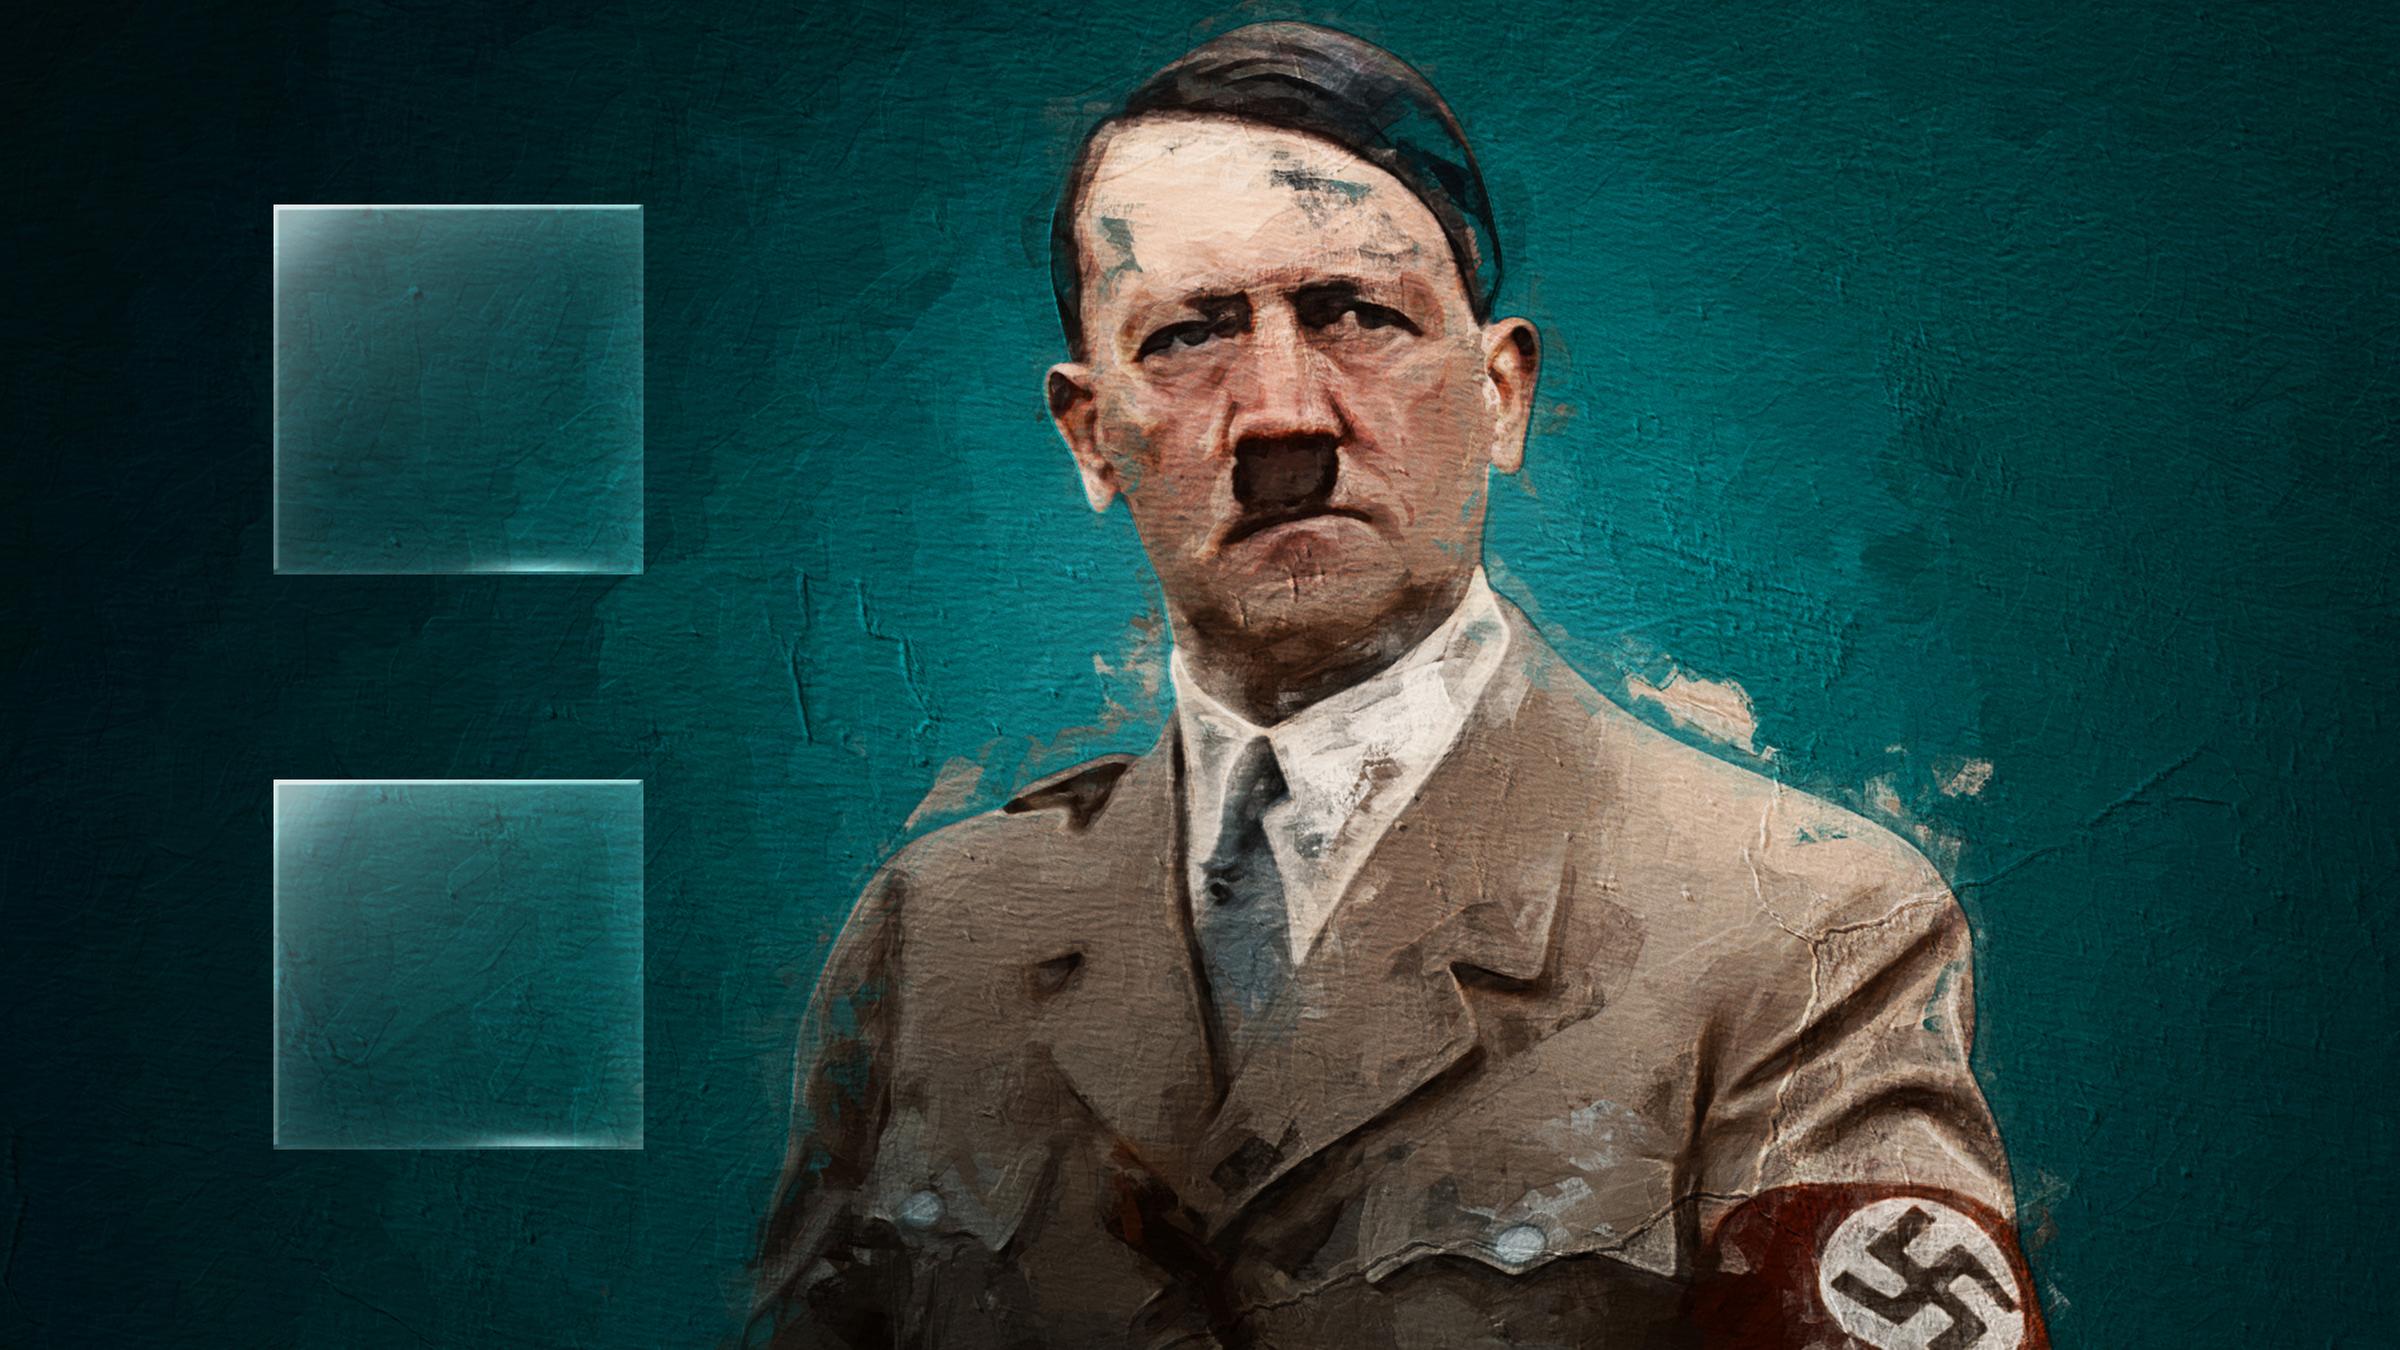 Graphic-Novel-Motiv, das Adolf Hitler in Unifform mit Hakenkreuzbinde vor blauem Hintergrund zeigt